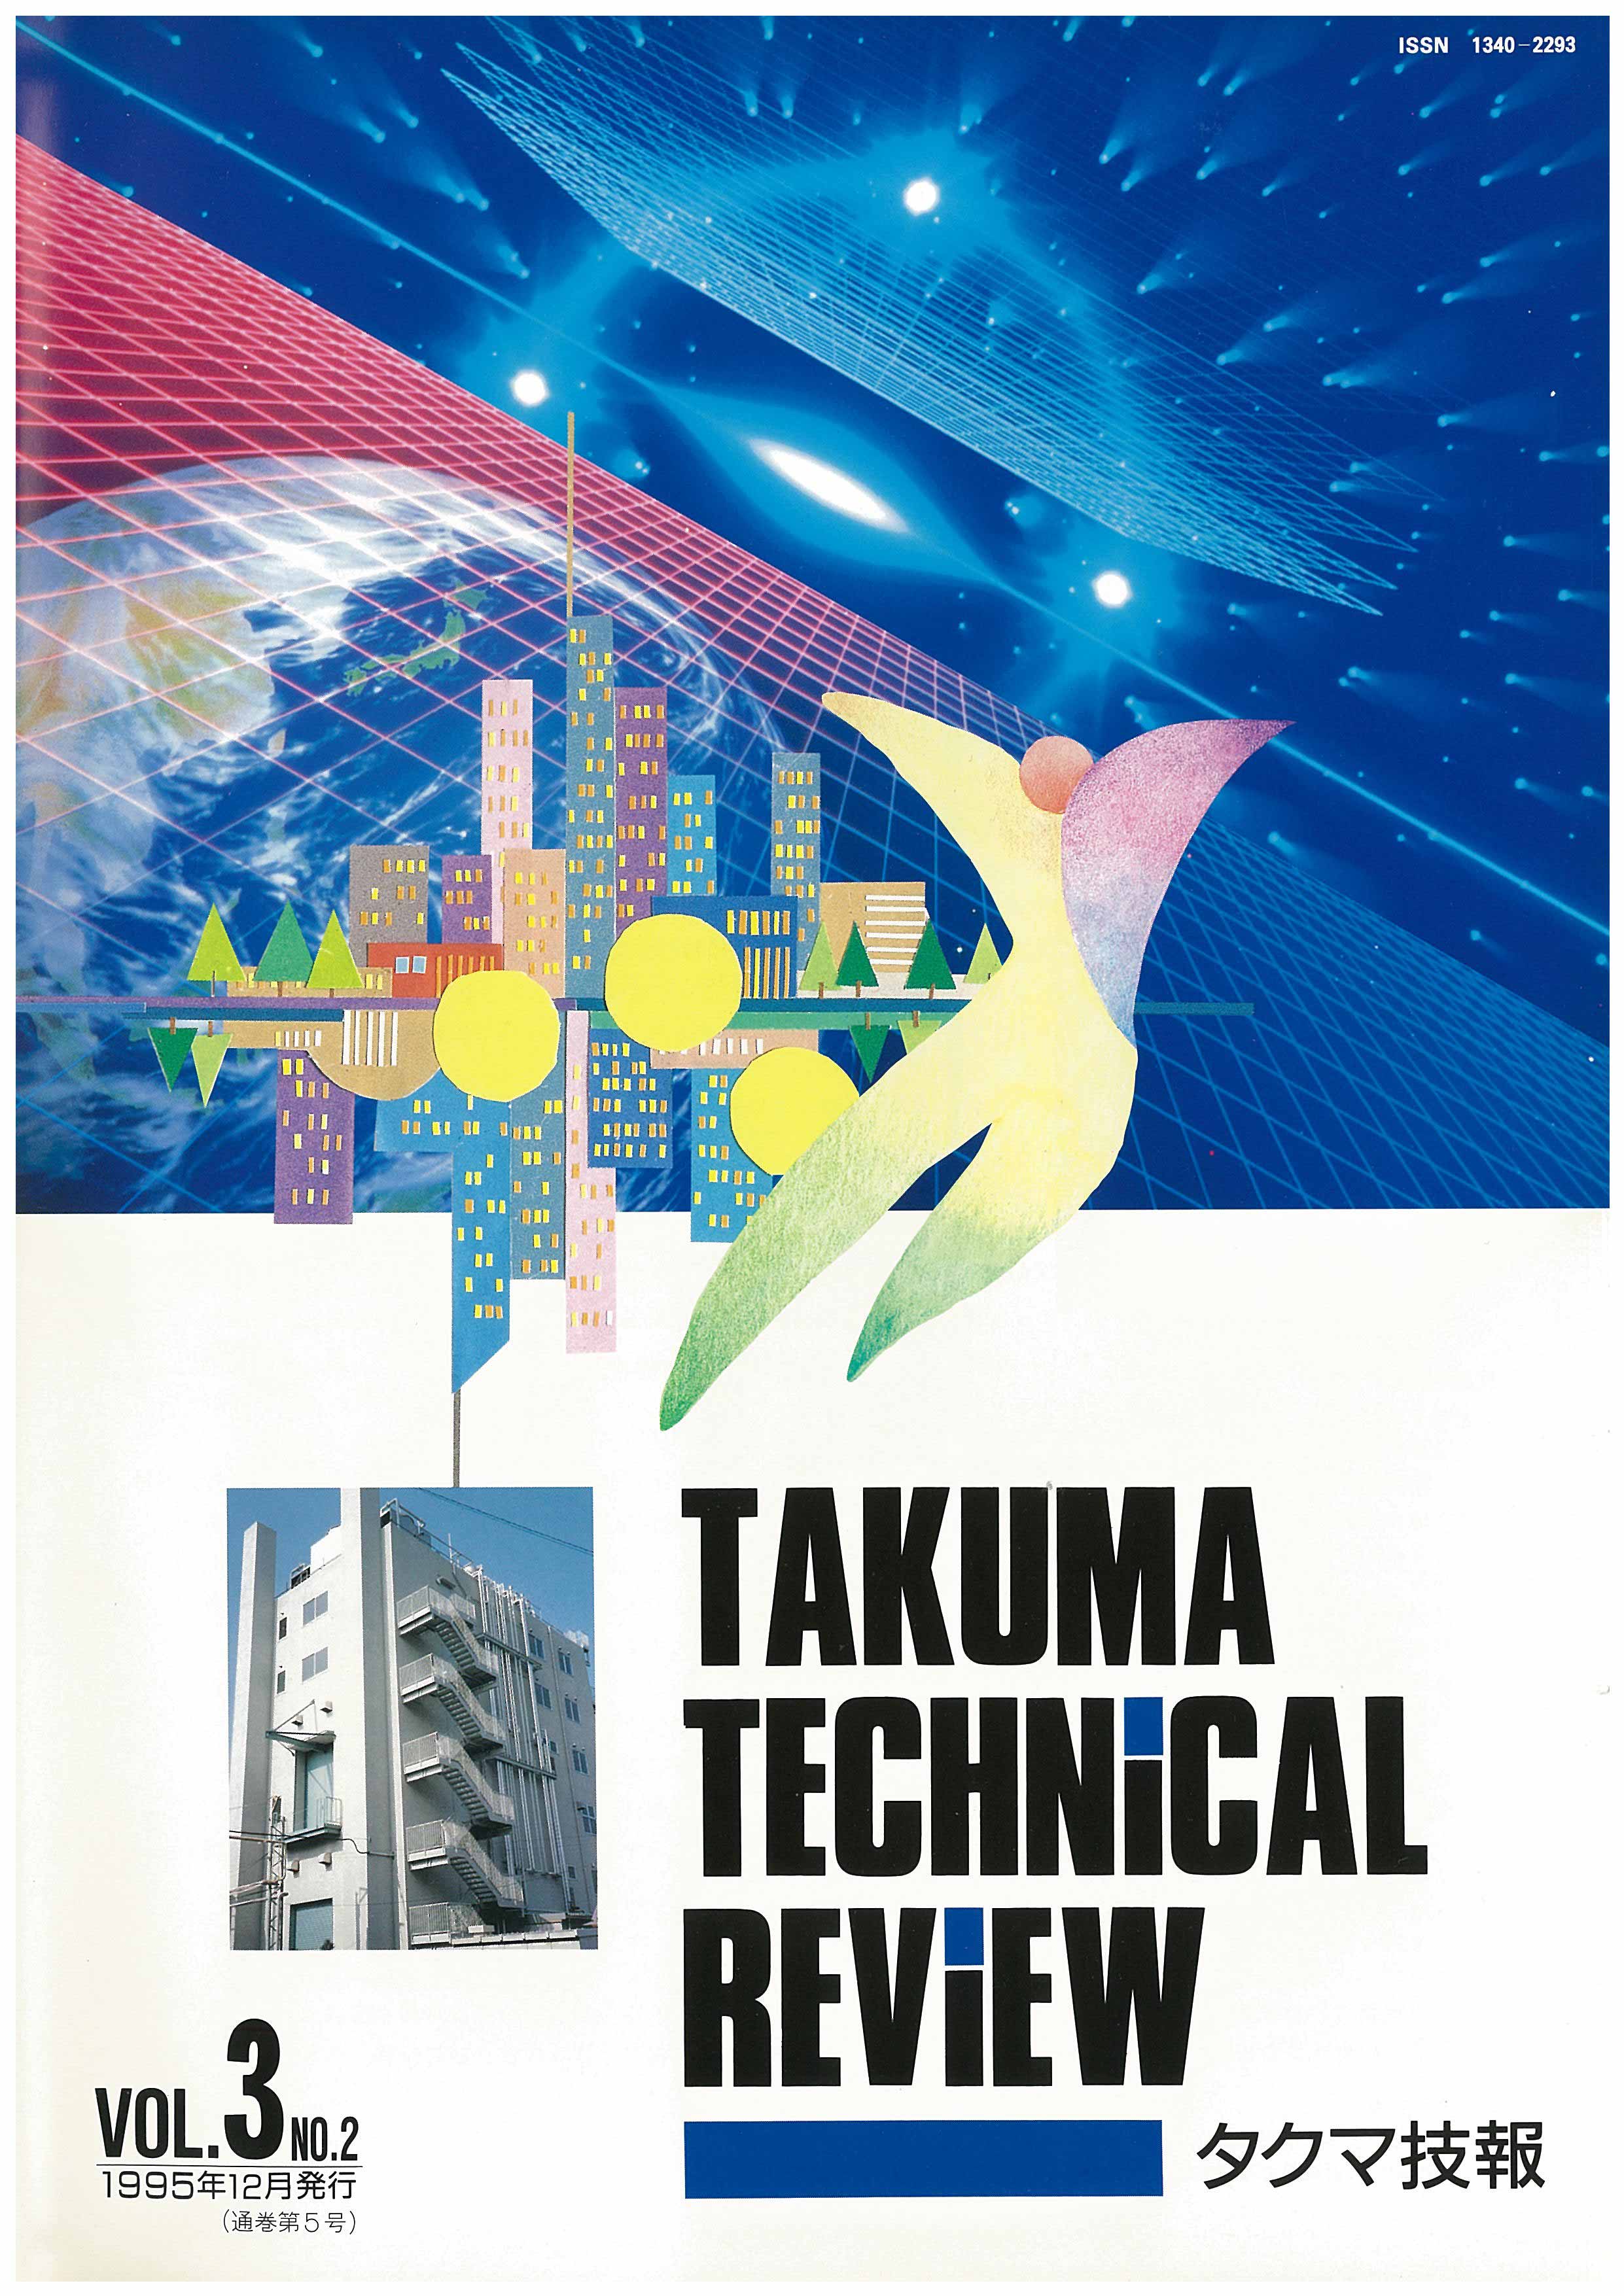 タクマ技報 VOL.3 NO.2（1995年12月発行）